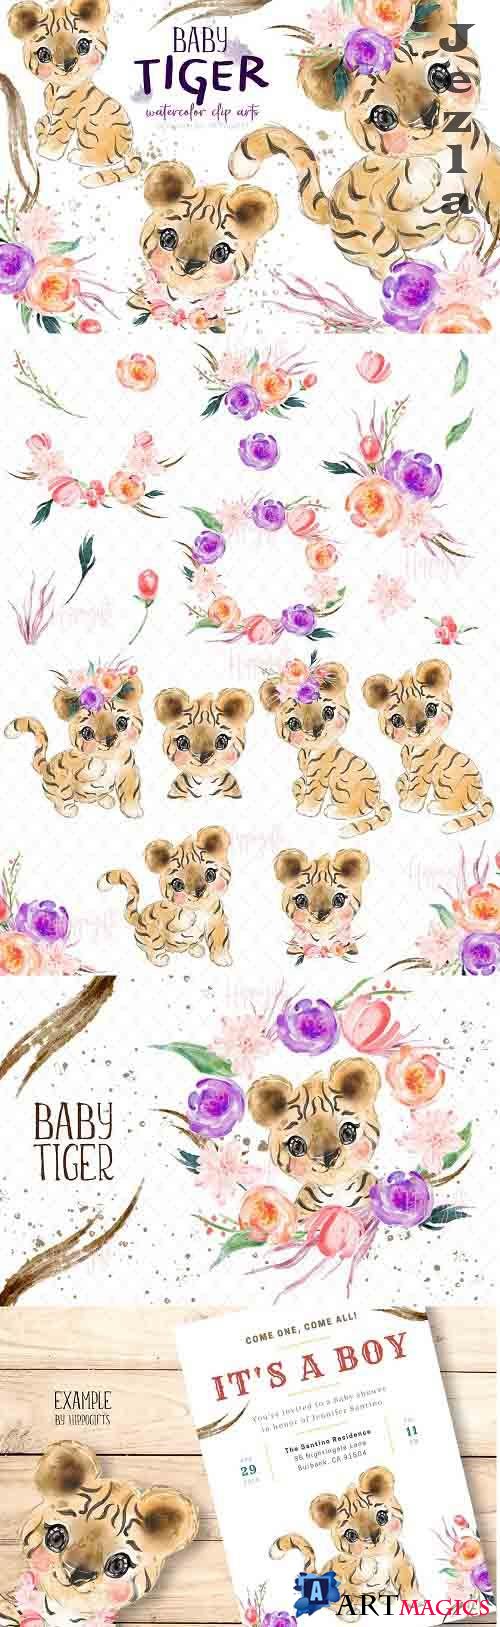 Baby tiger watercolor clip art - 6114179